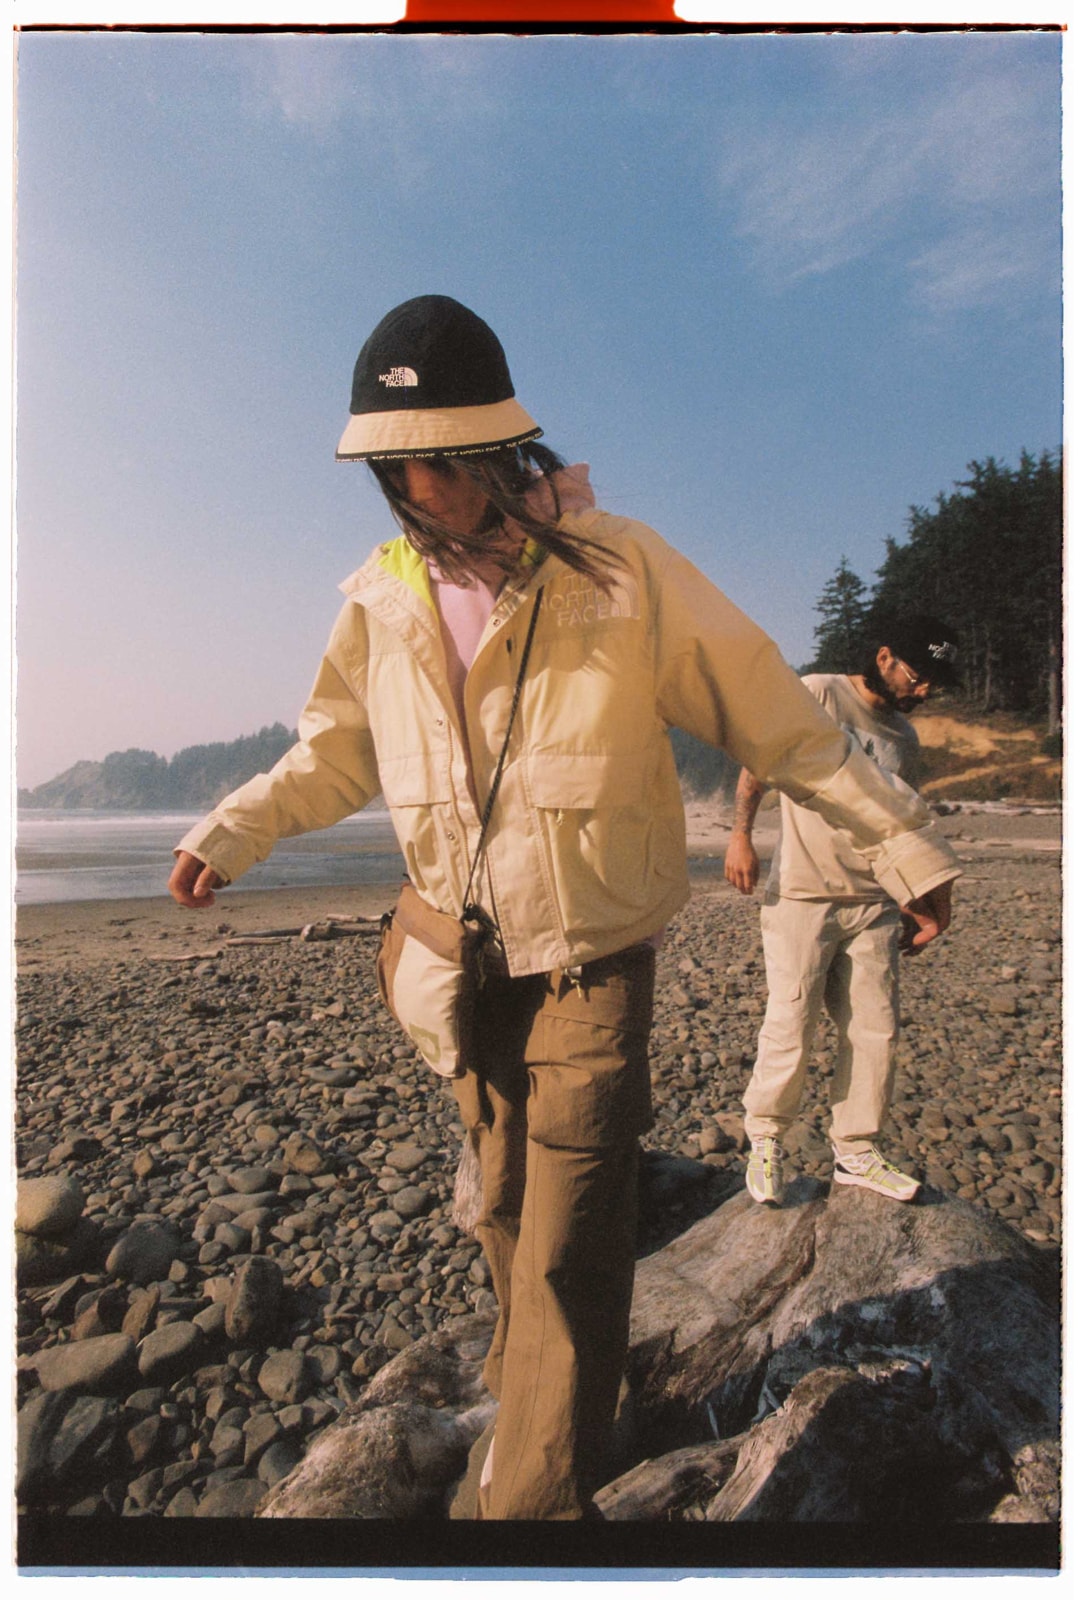 A person wearing the Women’s ’86 Low-Fi Hi-Tek Mountain Short Jacket walks across rocks on the beach.